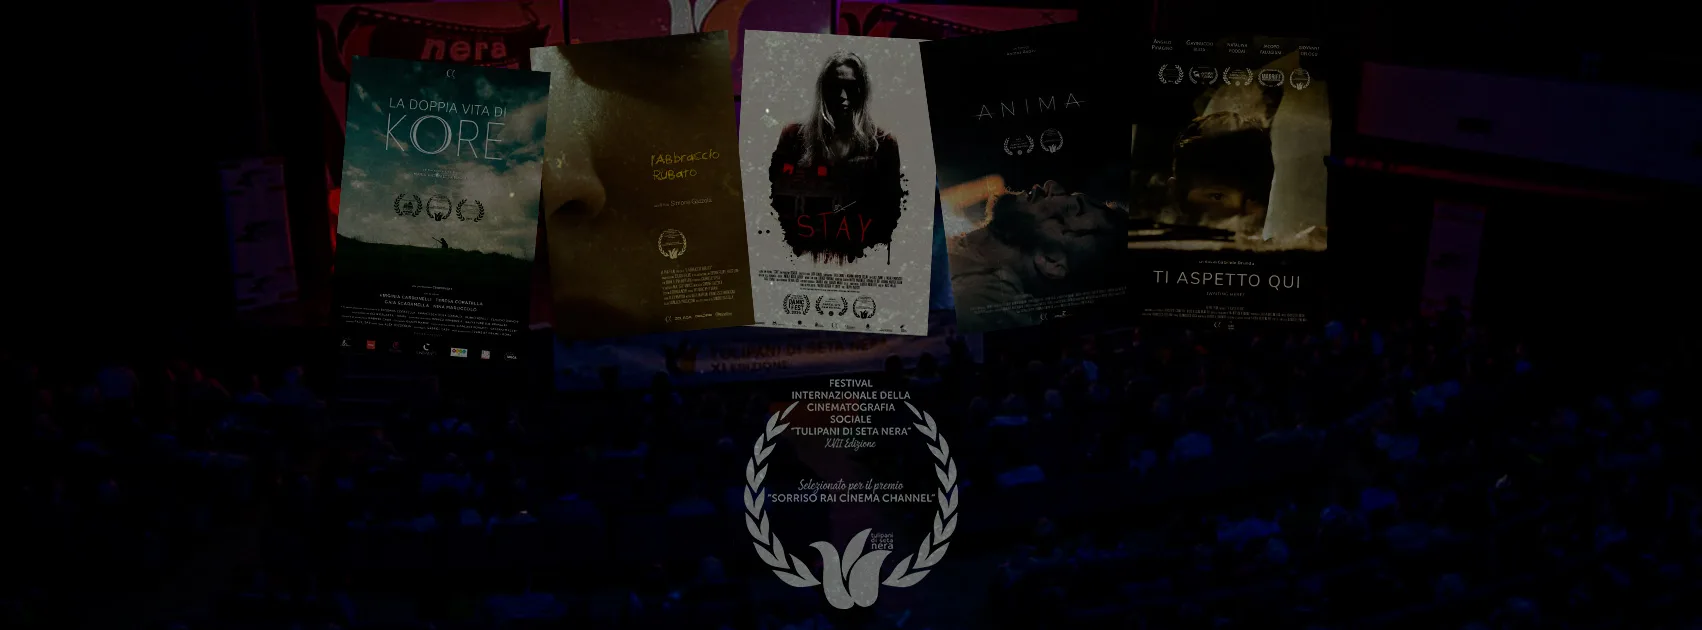 Cinque cortometraggi della distribuzione Alpha nella selezione del festival Tulipani di Seta Nera